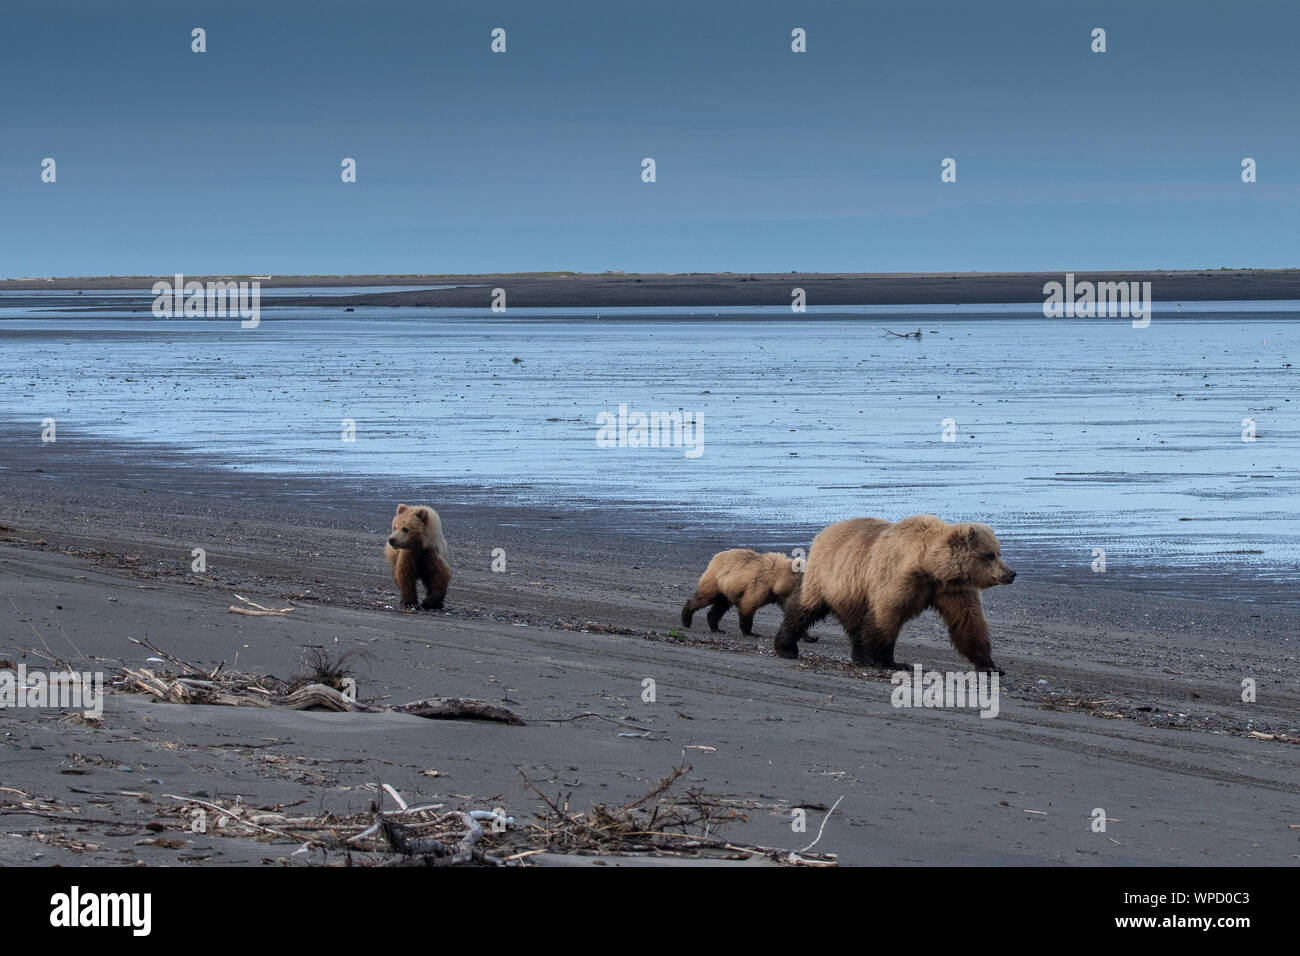 Castal Brown Bear (Ursus arctos) cubs in Lake Clark National Park, Alaska Stock Photo